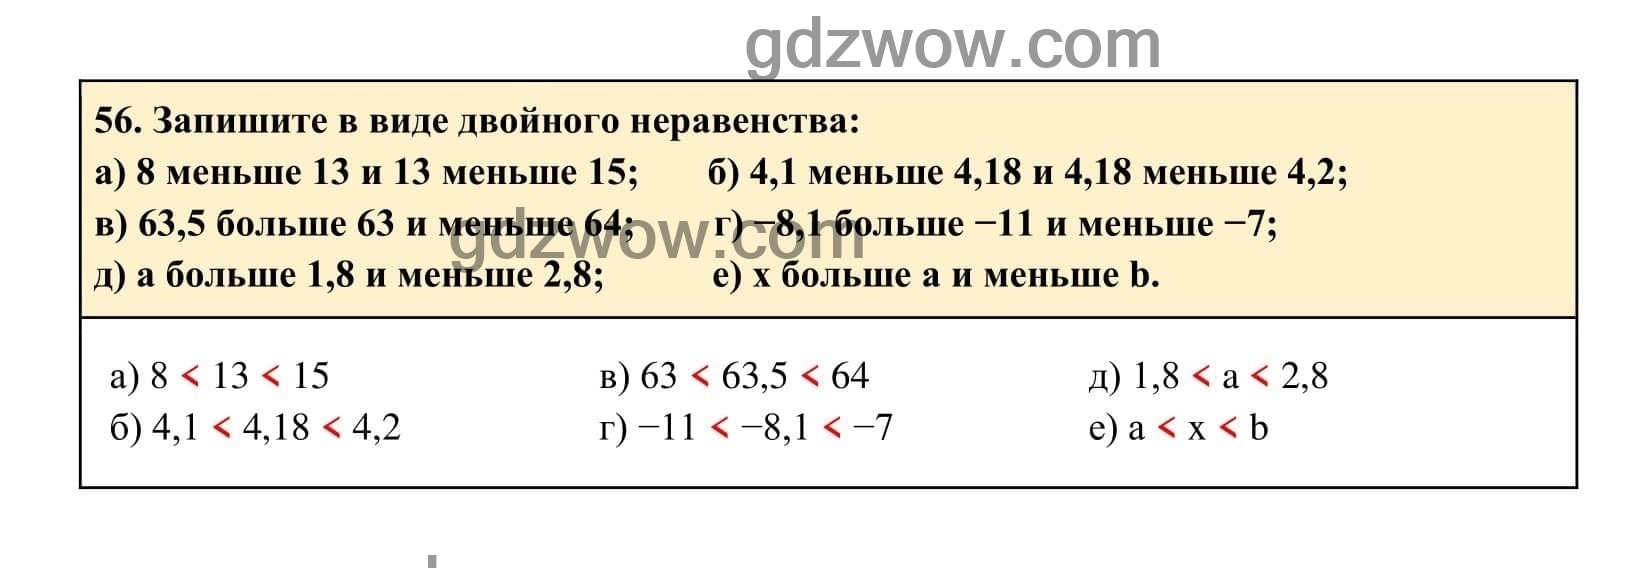 Упражнение 56 - ГДЗ по Алгебре 7 класс Учебник Макарычев (решебник) - GDZwow